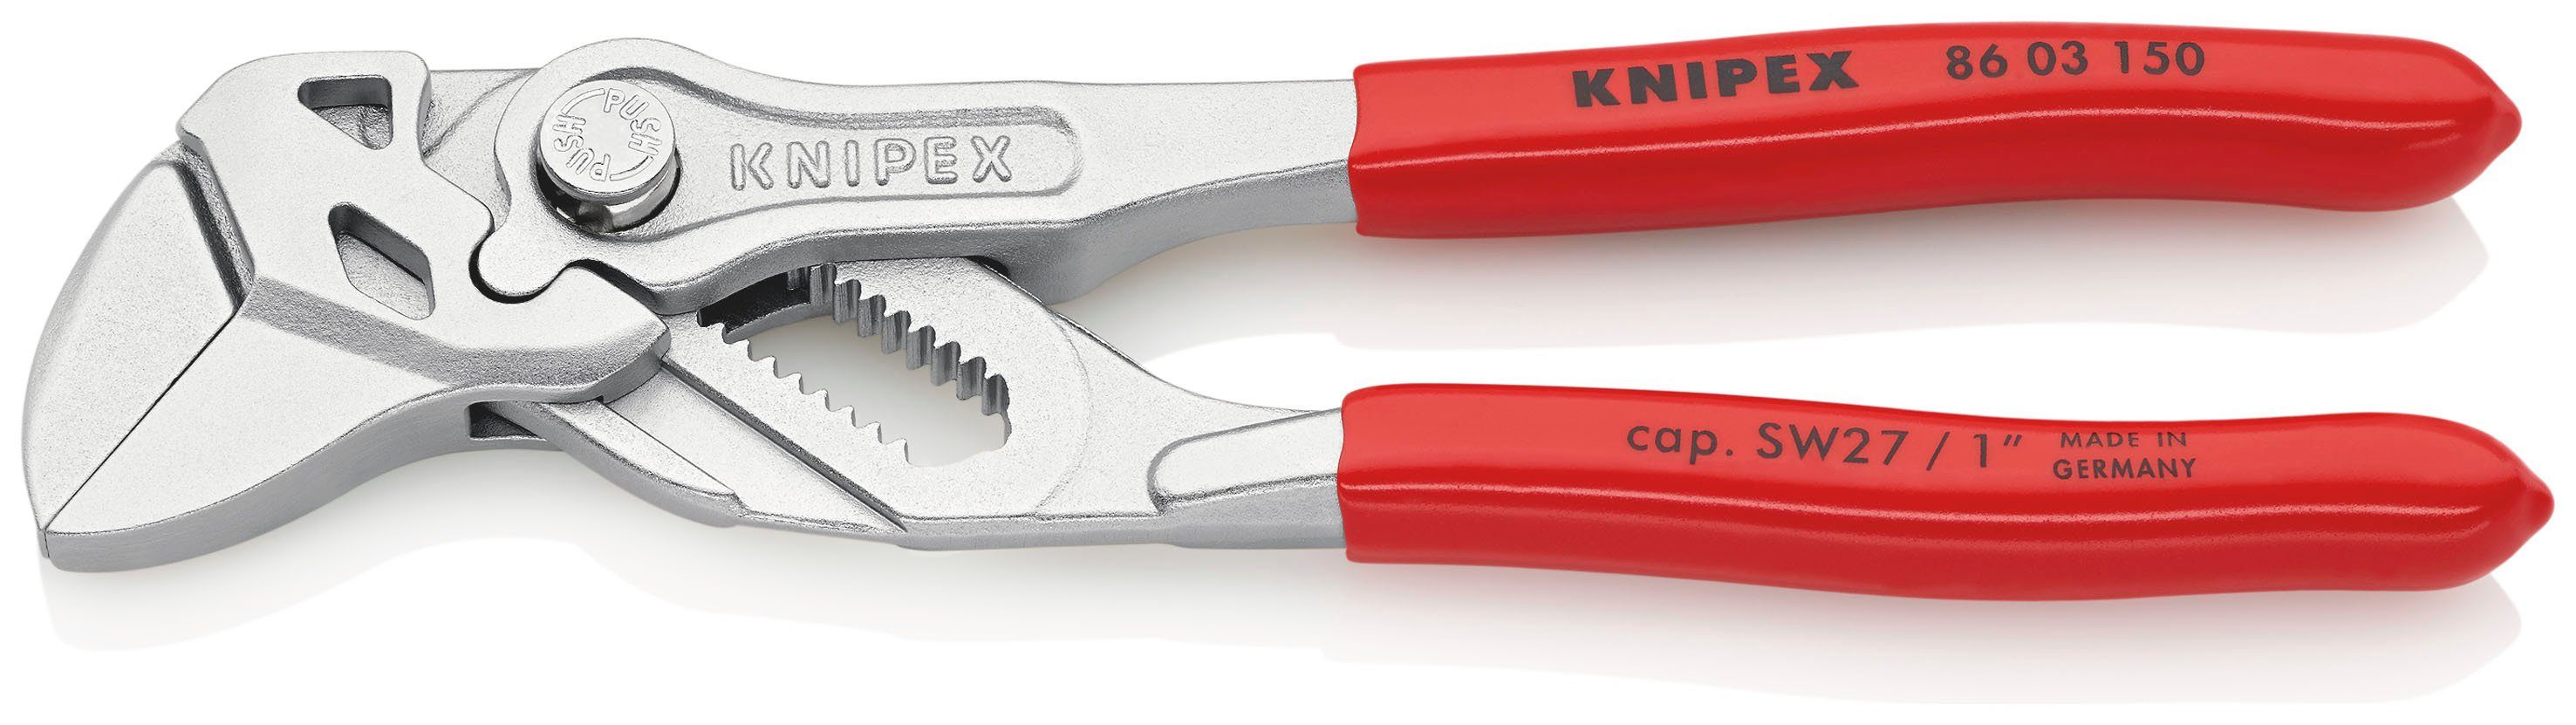 Knipex Zangenschlüssel 86 03 150 Zange und Schraubenschlüssel in einem Werkzeug, 1-tlg., verchromt, mit Kunststoff überzogen 150 mm | Zangen